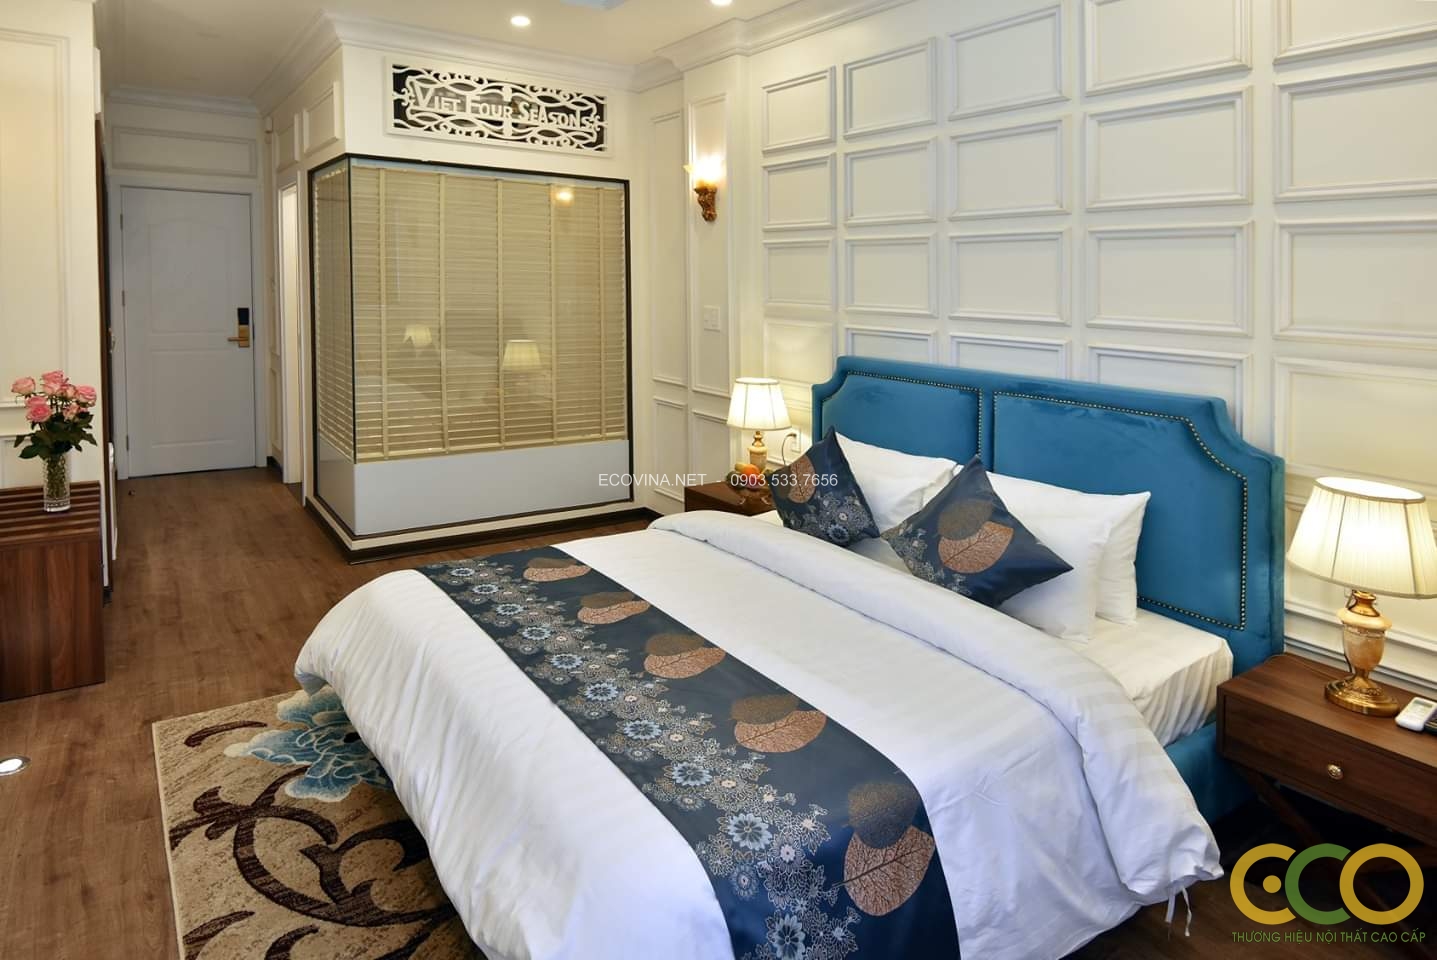 Thay đổi bộ mặt nội thất khách sạn VIET4SEASON - 275 Lạch Tray Hải Phòng